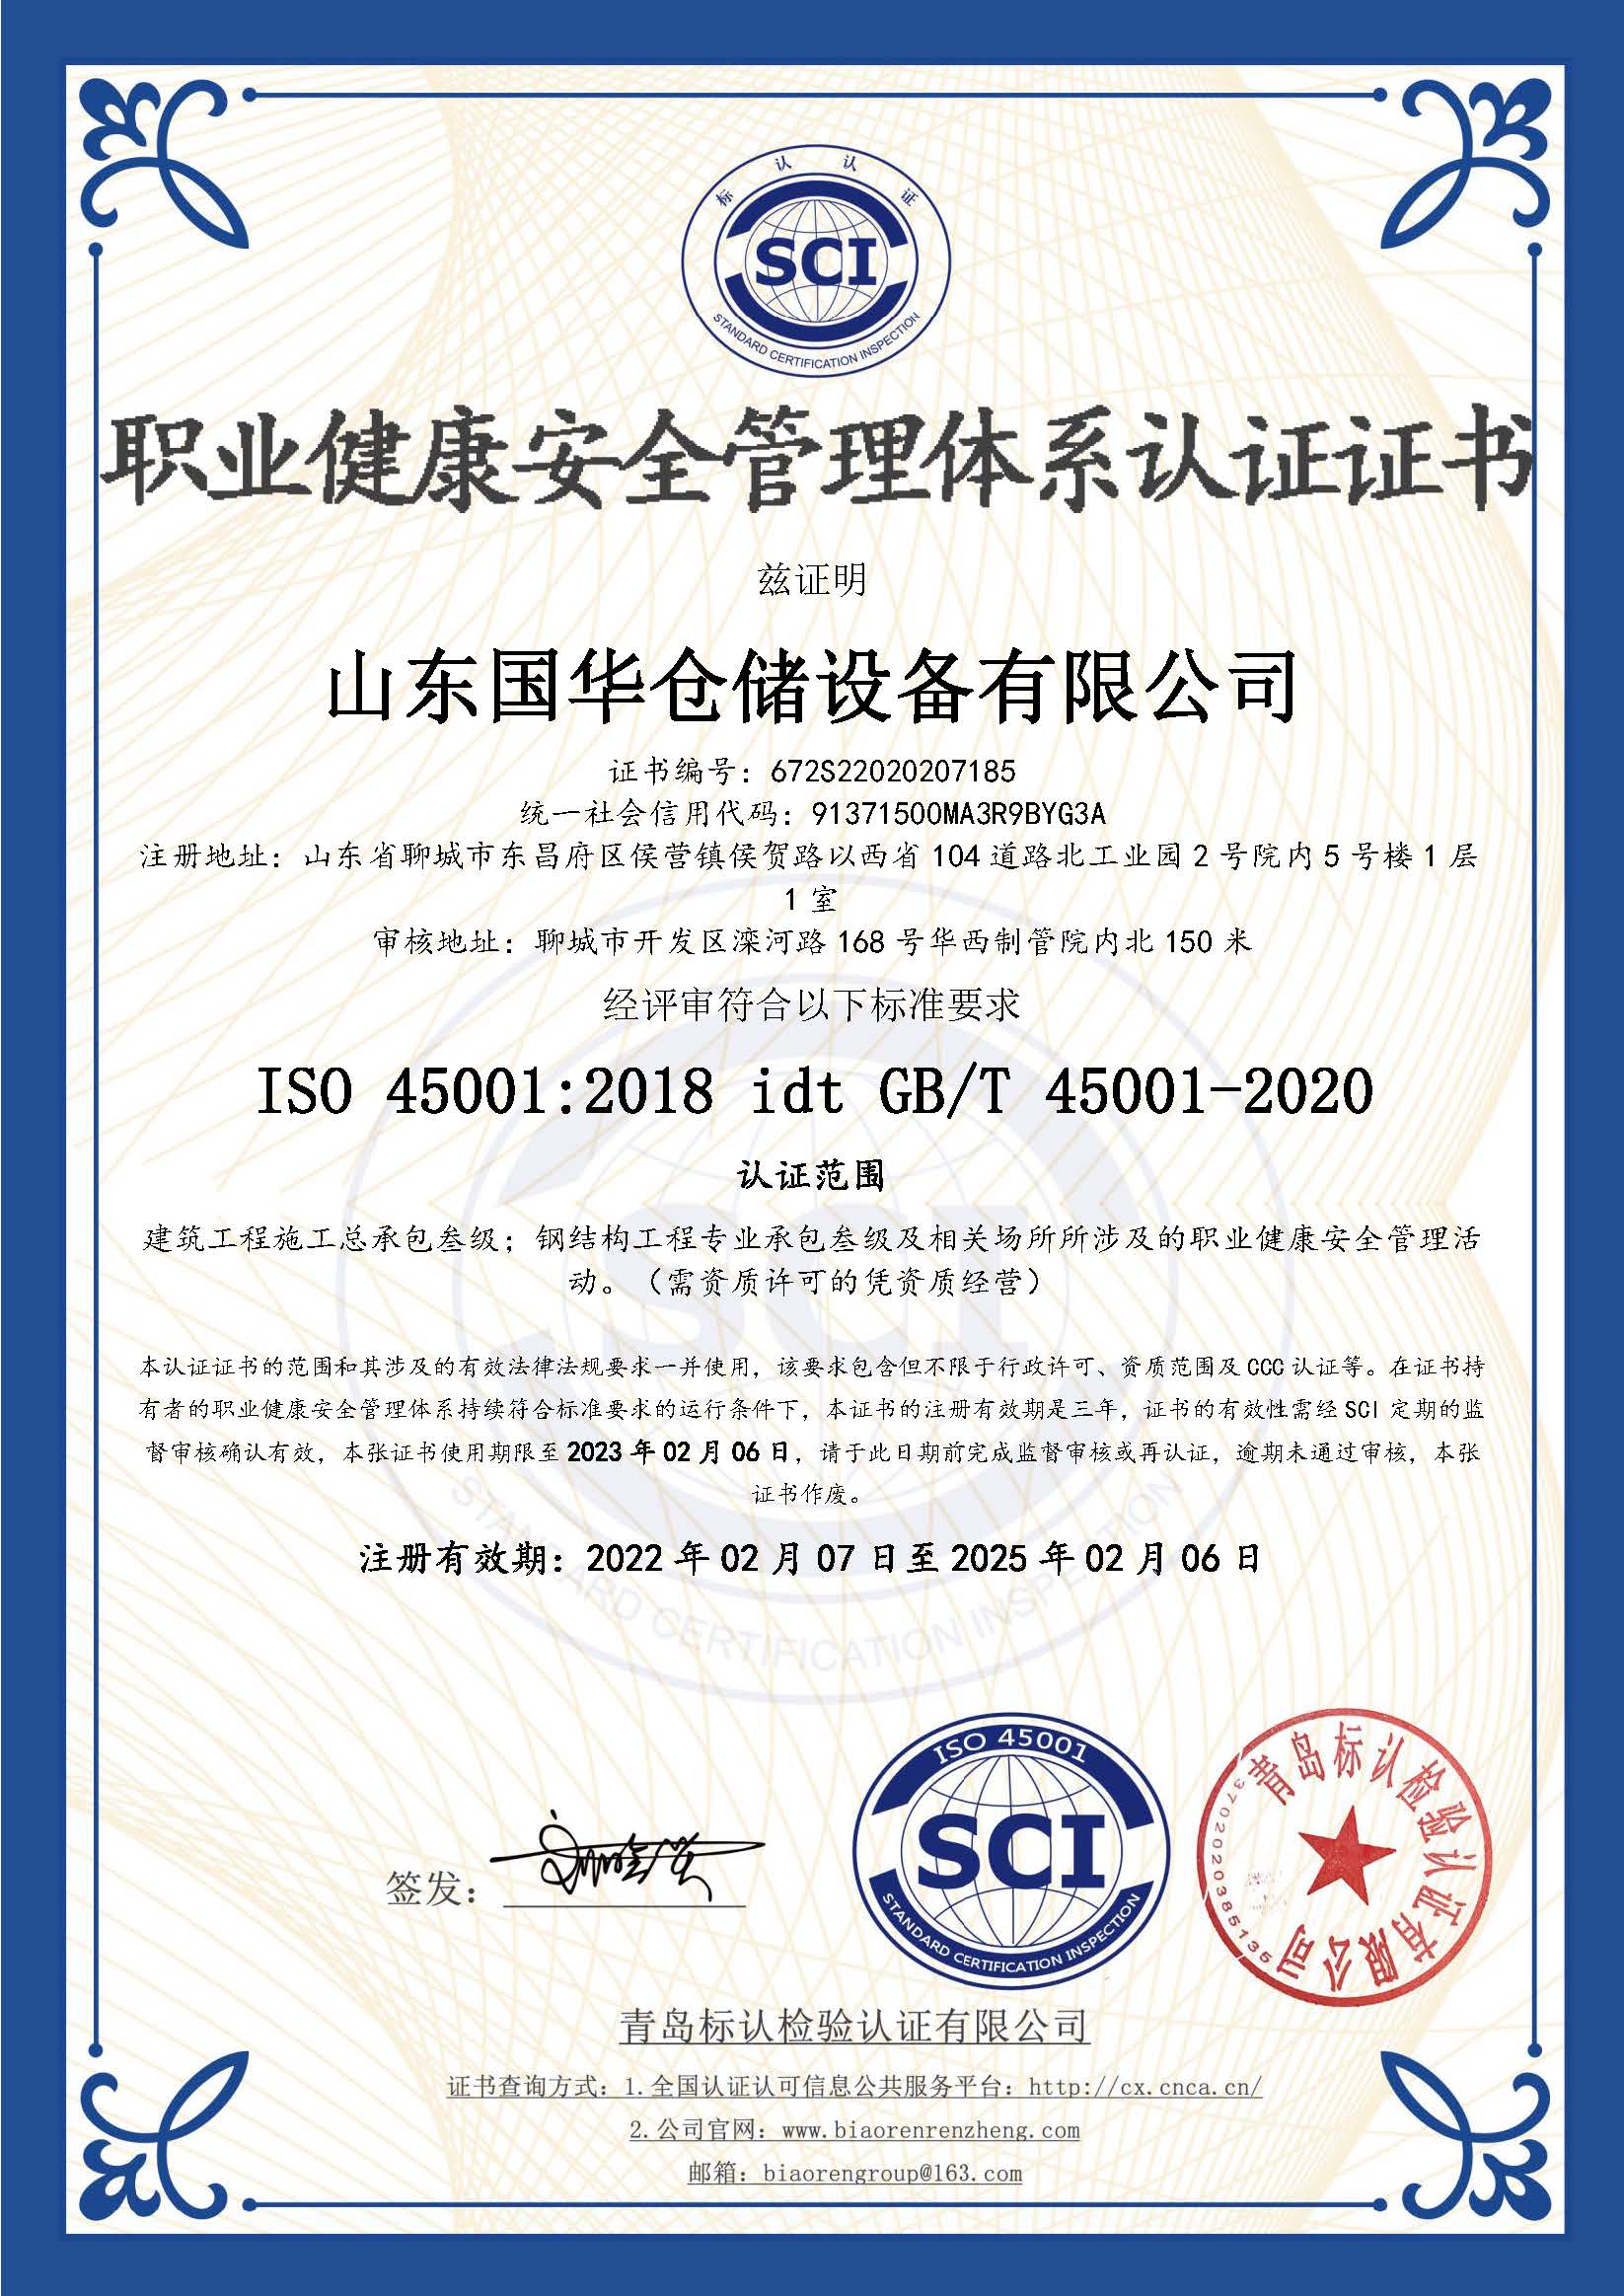 徐州钢板仓职业健康安全管理体系认证证书